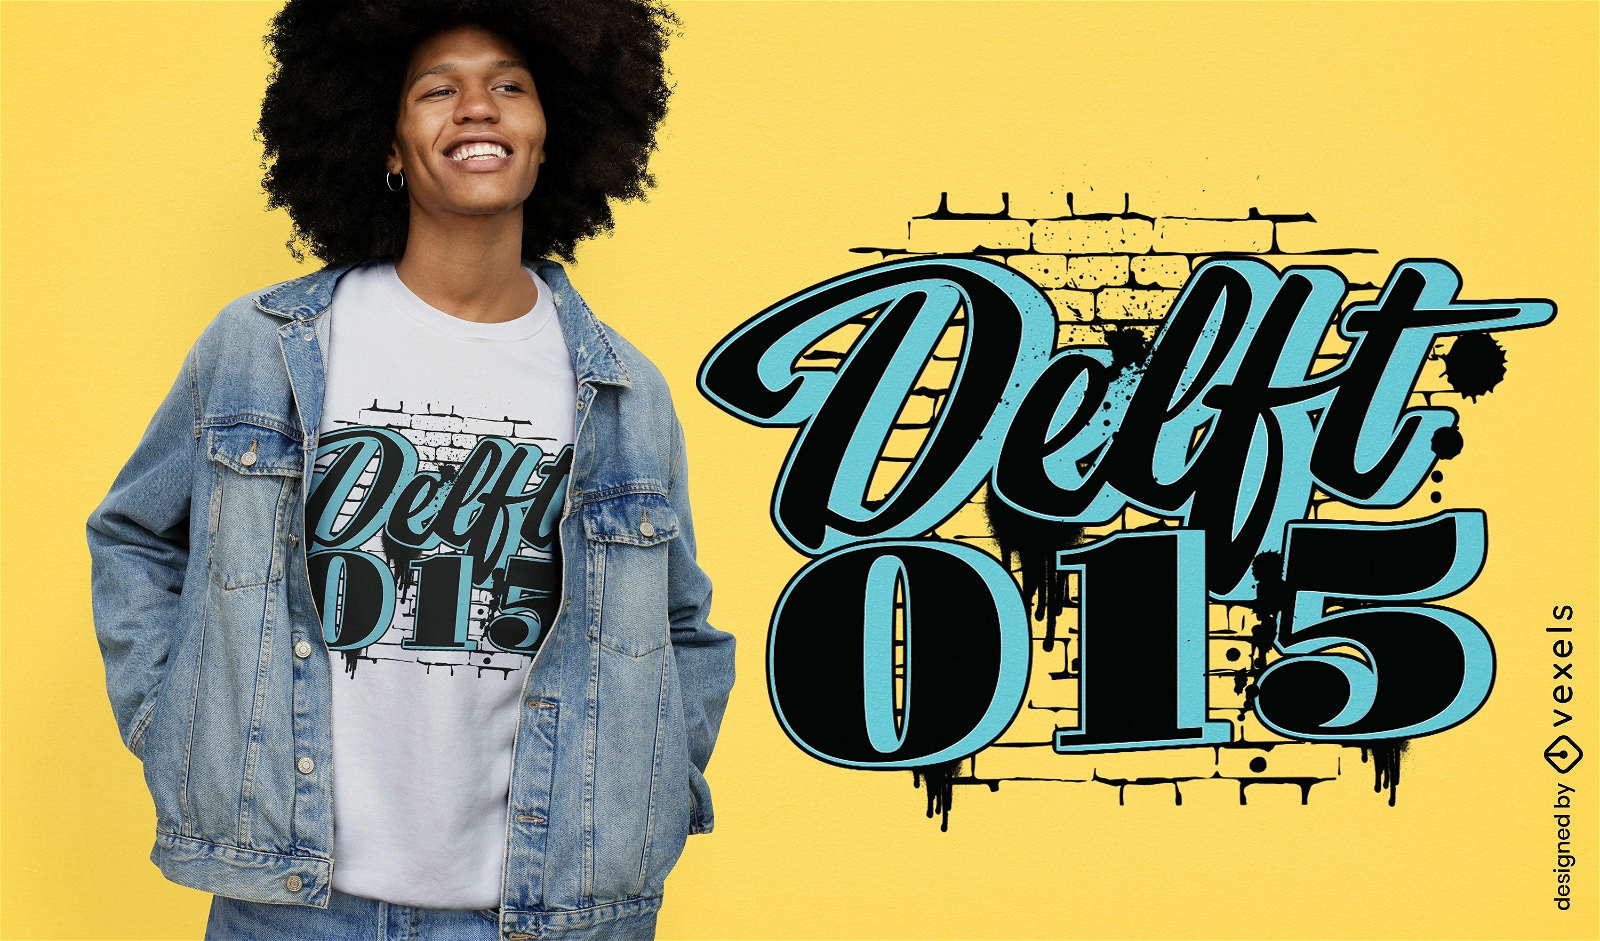 Delft holland zitieren t-shirt design